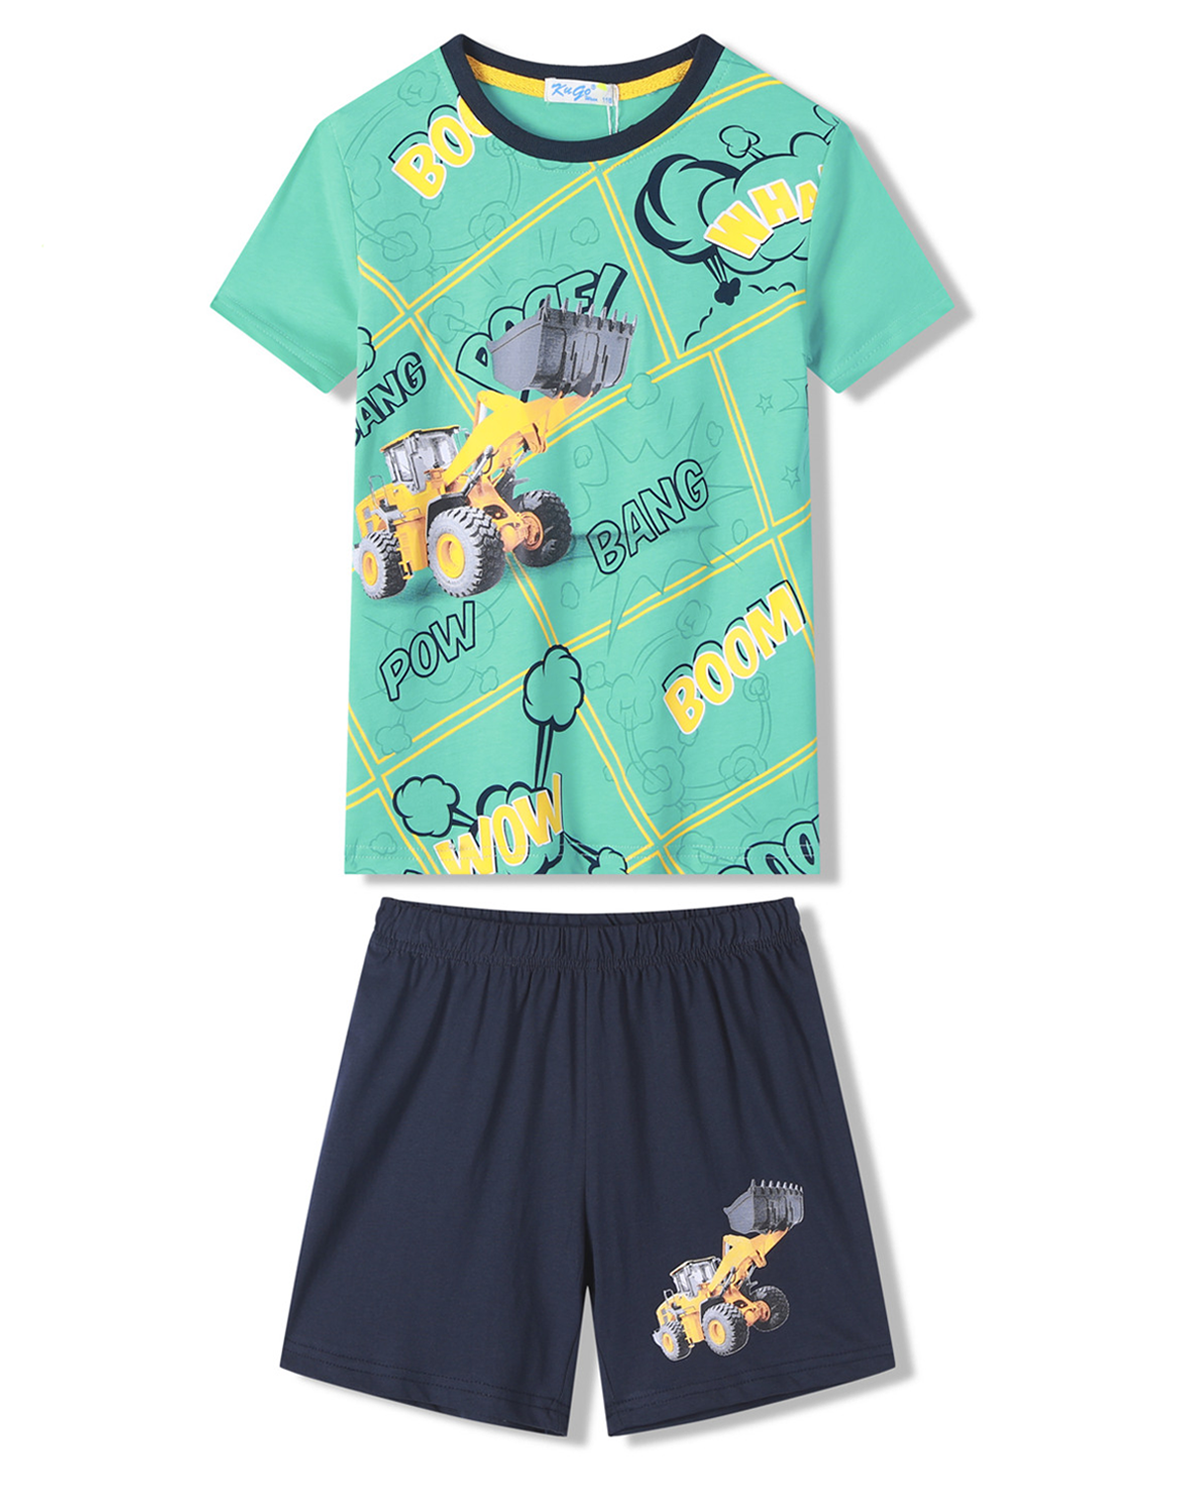 Chlapecké pyžamo - KUGO WT7310, zelinkavá Barva: Zelinkavá, Velikost: 116